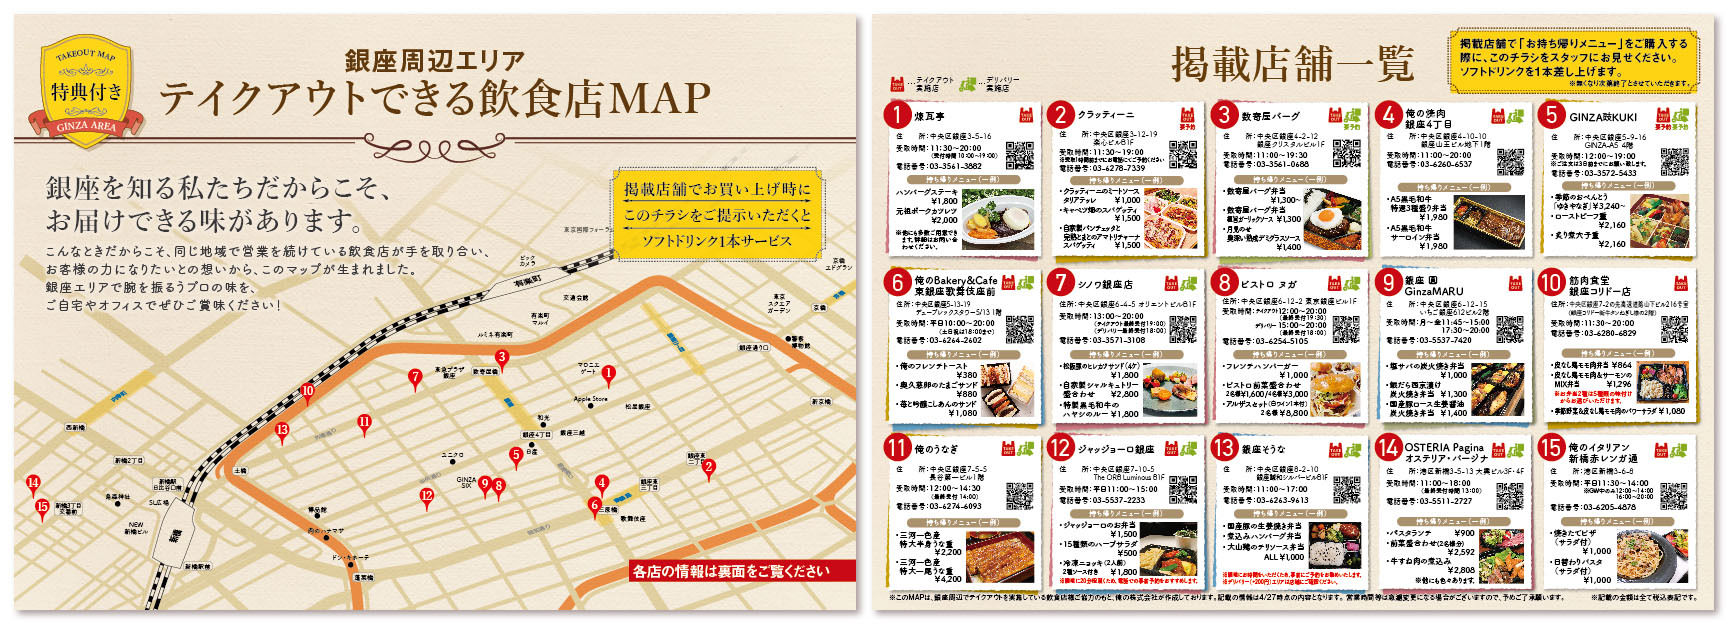 佐賀の老舗豆腐店が5月5日・6日に豆腐1,000丁を
地域の児童施設、老人ホームなどに無償提供